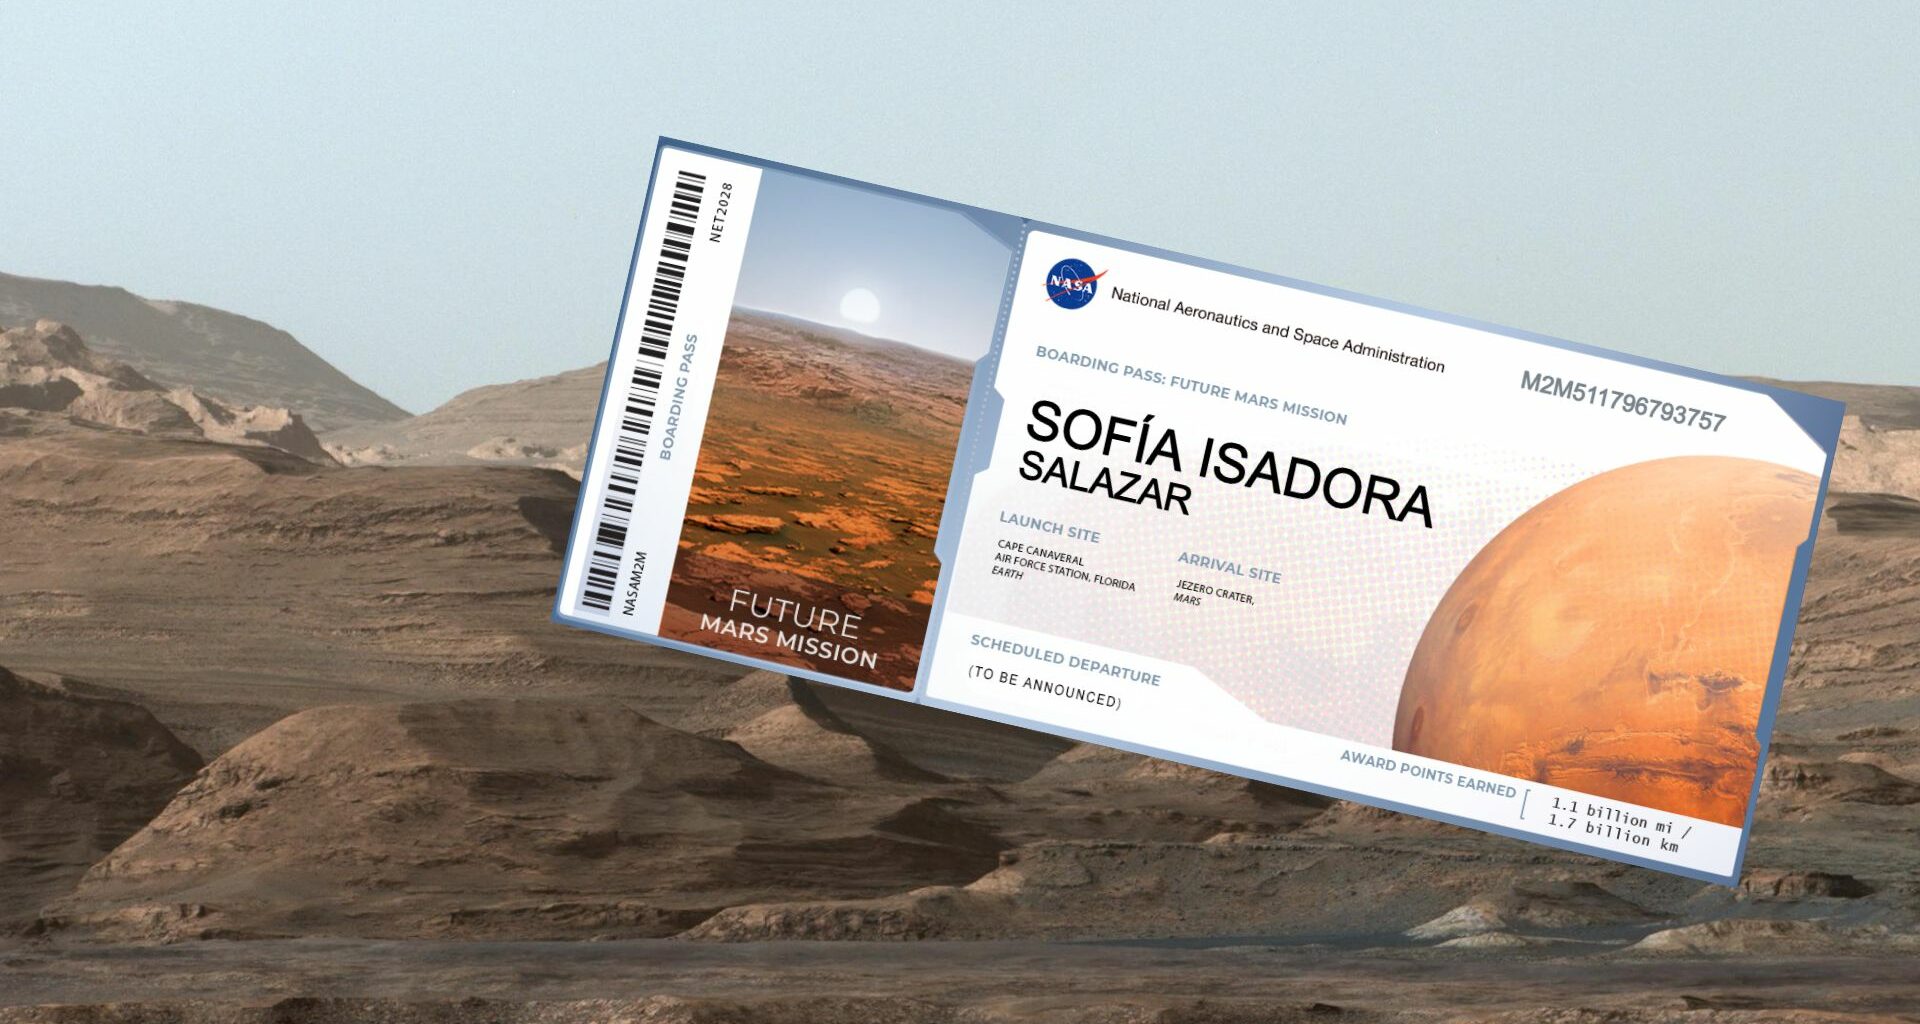 ¿Quieres ir a Marte? Envía tu nombre con la NASA en su próxima misión